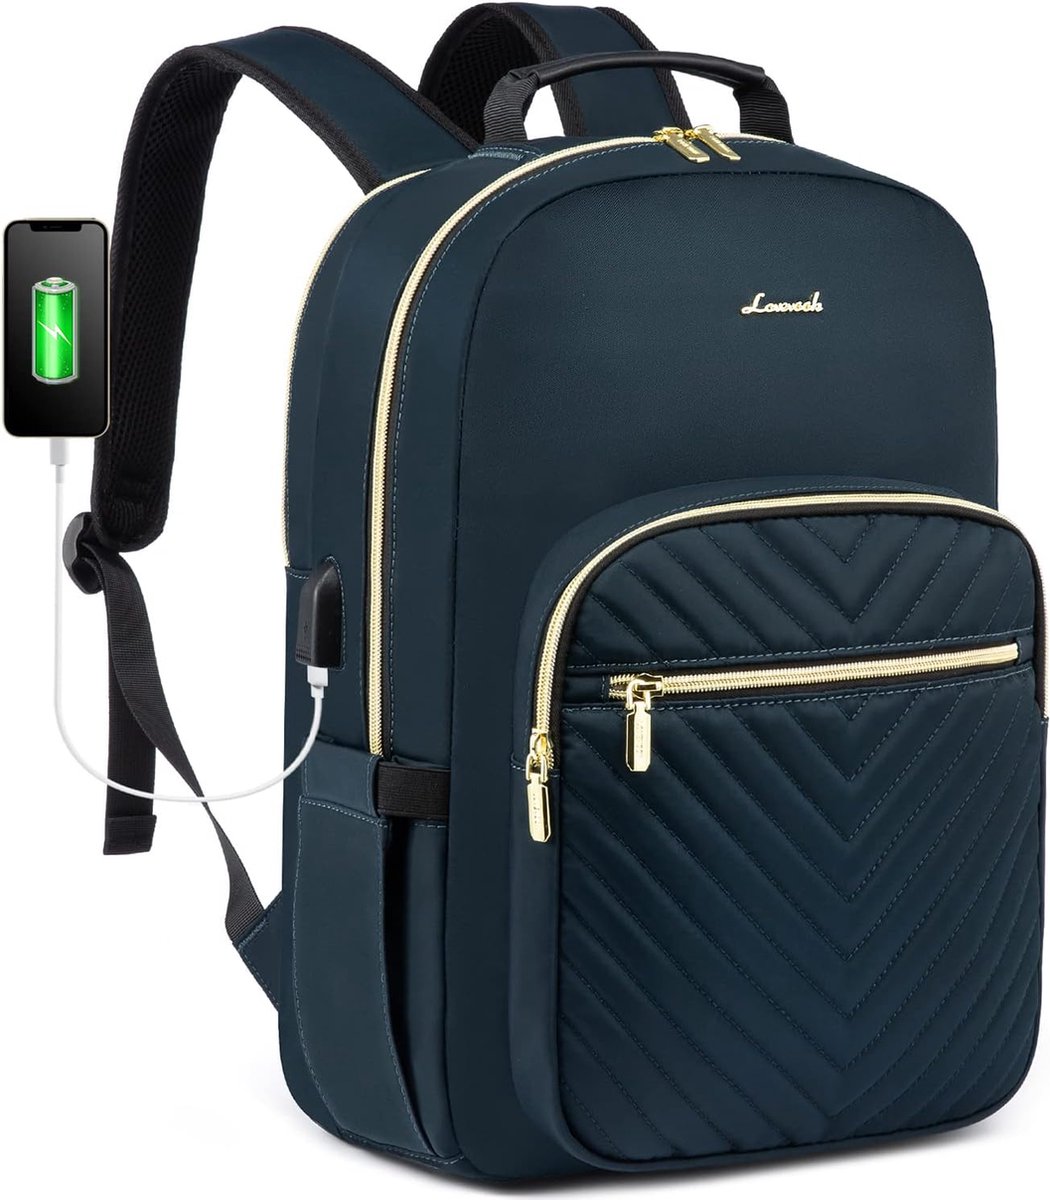 Rugzak met USB-oplaadpoort - Petrol - 15.6 inch laptoptas - 43 x 30,5 x 19 - Waterbestendig - School, werk, reizen